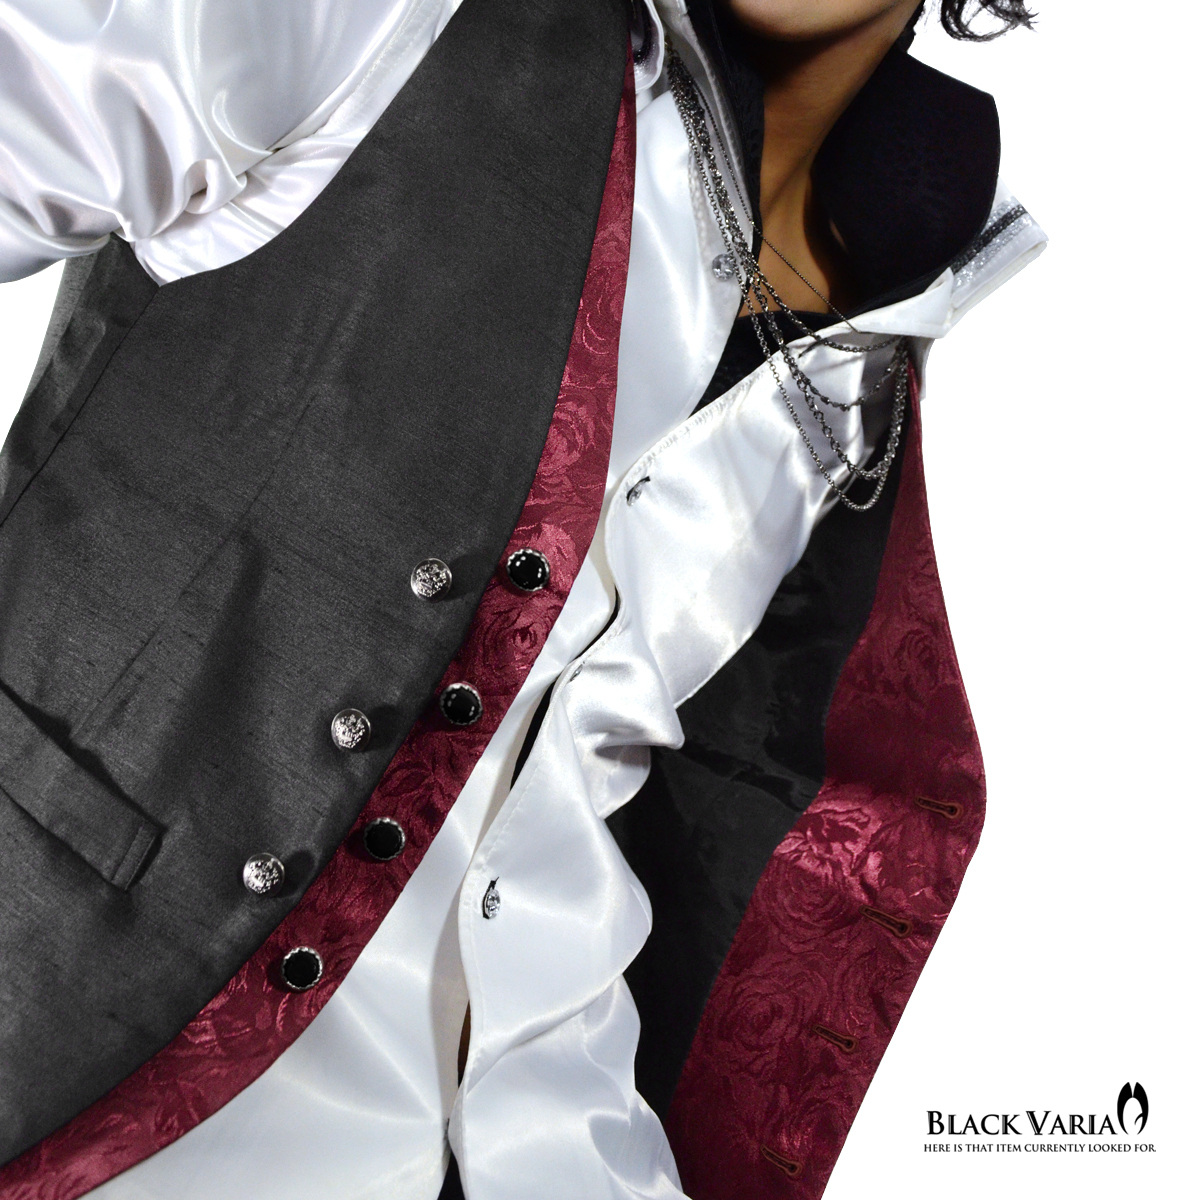 V#927778-bka BLACK VARIA ジレ ベスト ローズ薔薇 フェイクレイヤード メンズ 日本製(ブラック黒×ワインレッド赤バラ柄) M ステージ衣装